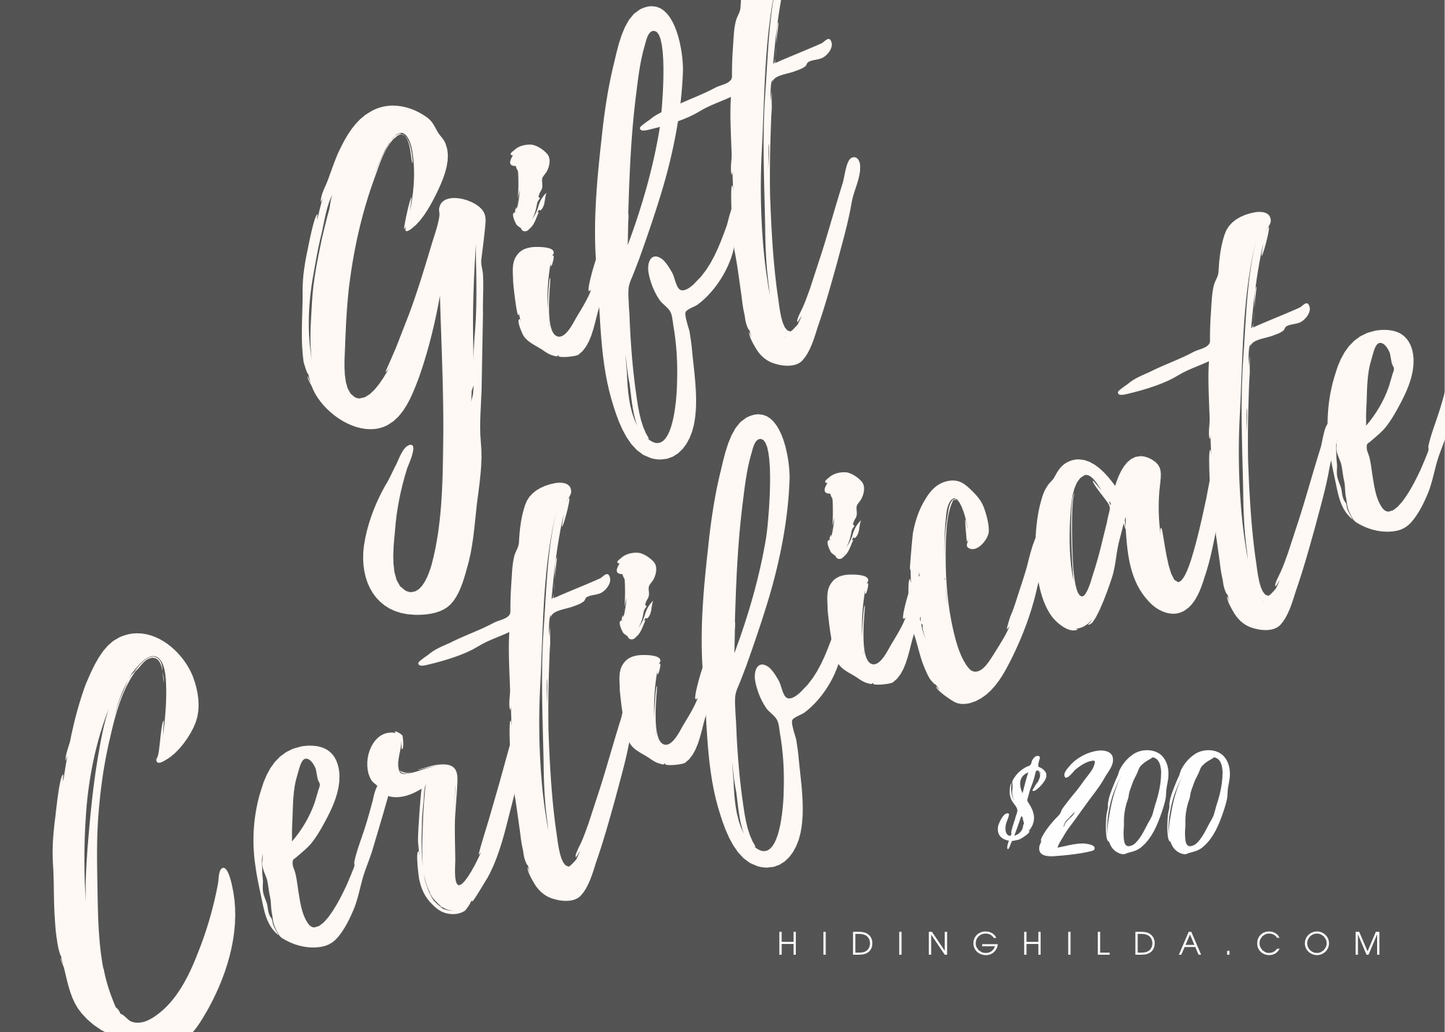 Gift Cards - Hiding Hilda, LLC